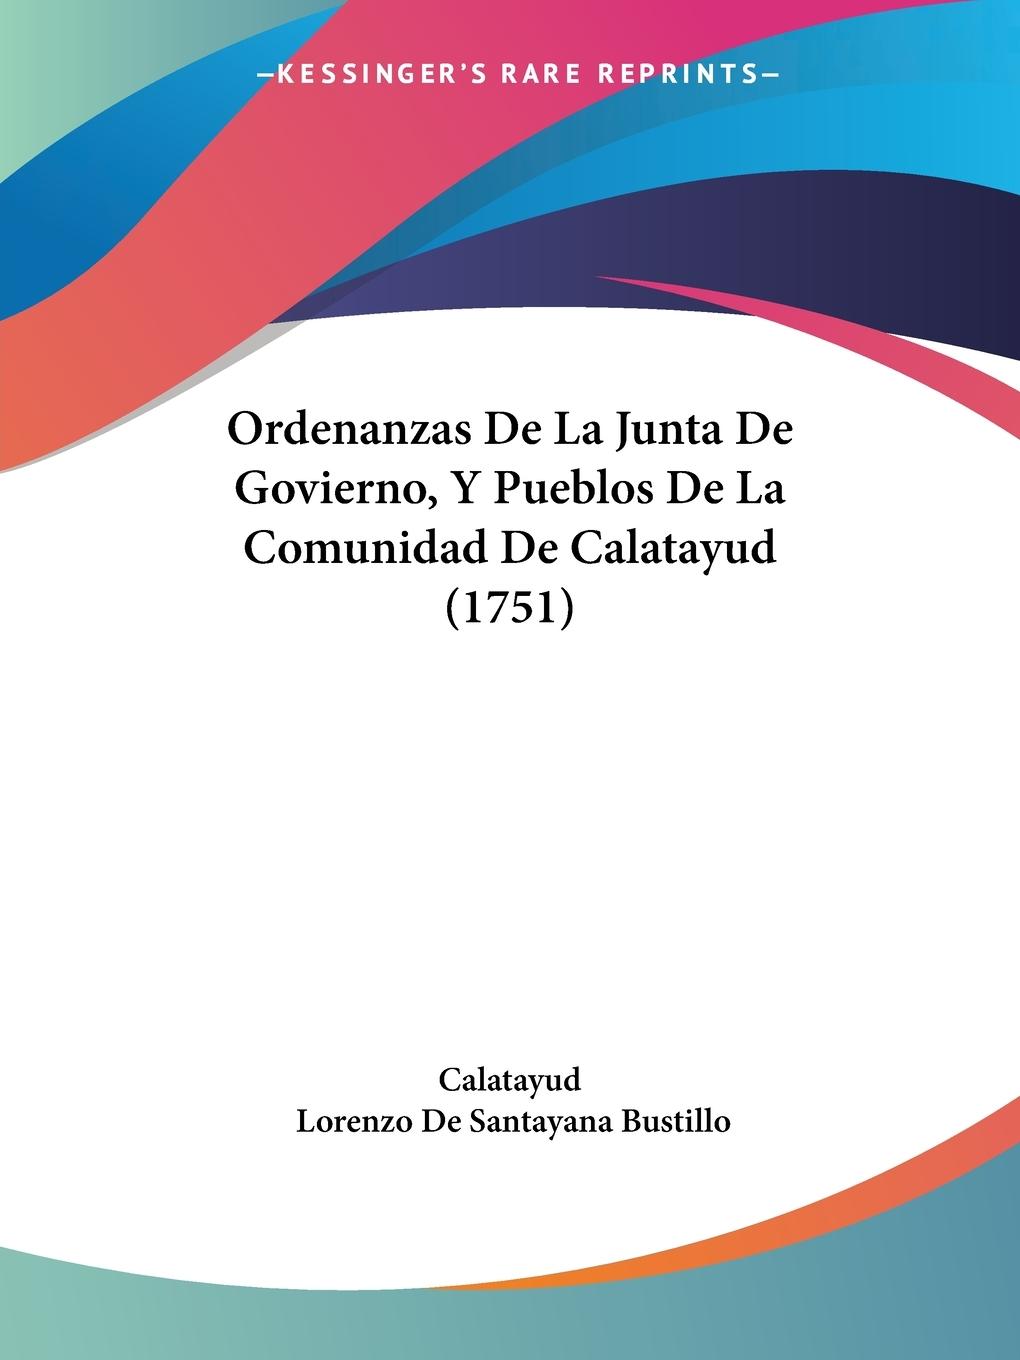 Ordenanzas De La Junta De Govierno, Y Pueblos De La Comunidad De Calatayud (1751) - Calatayud Bustillo, Lorenzo De Santayana